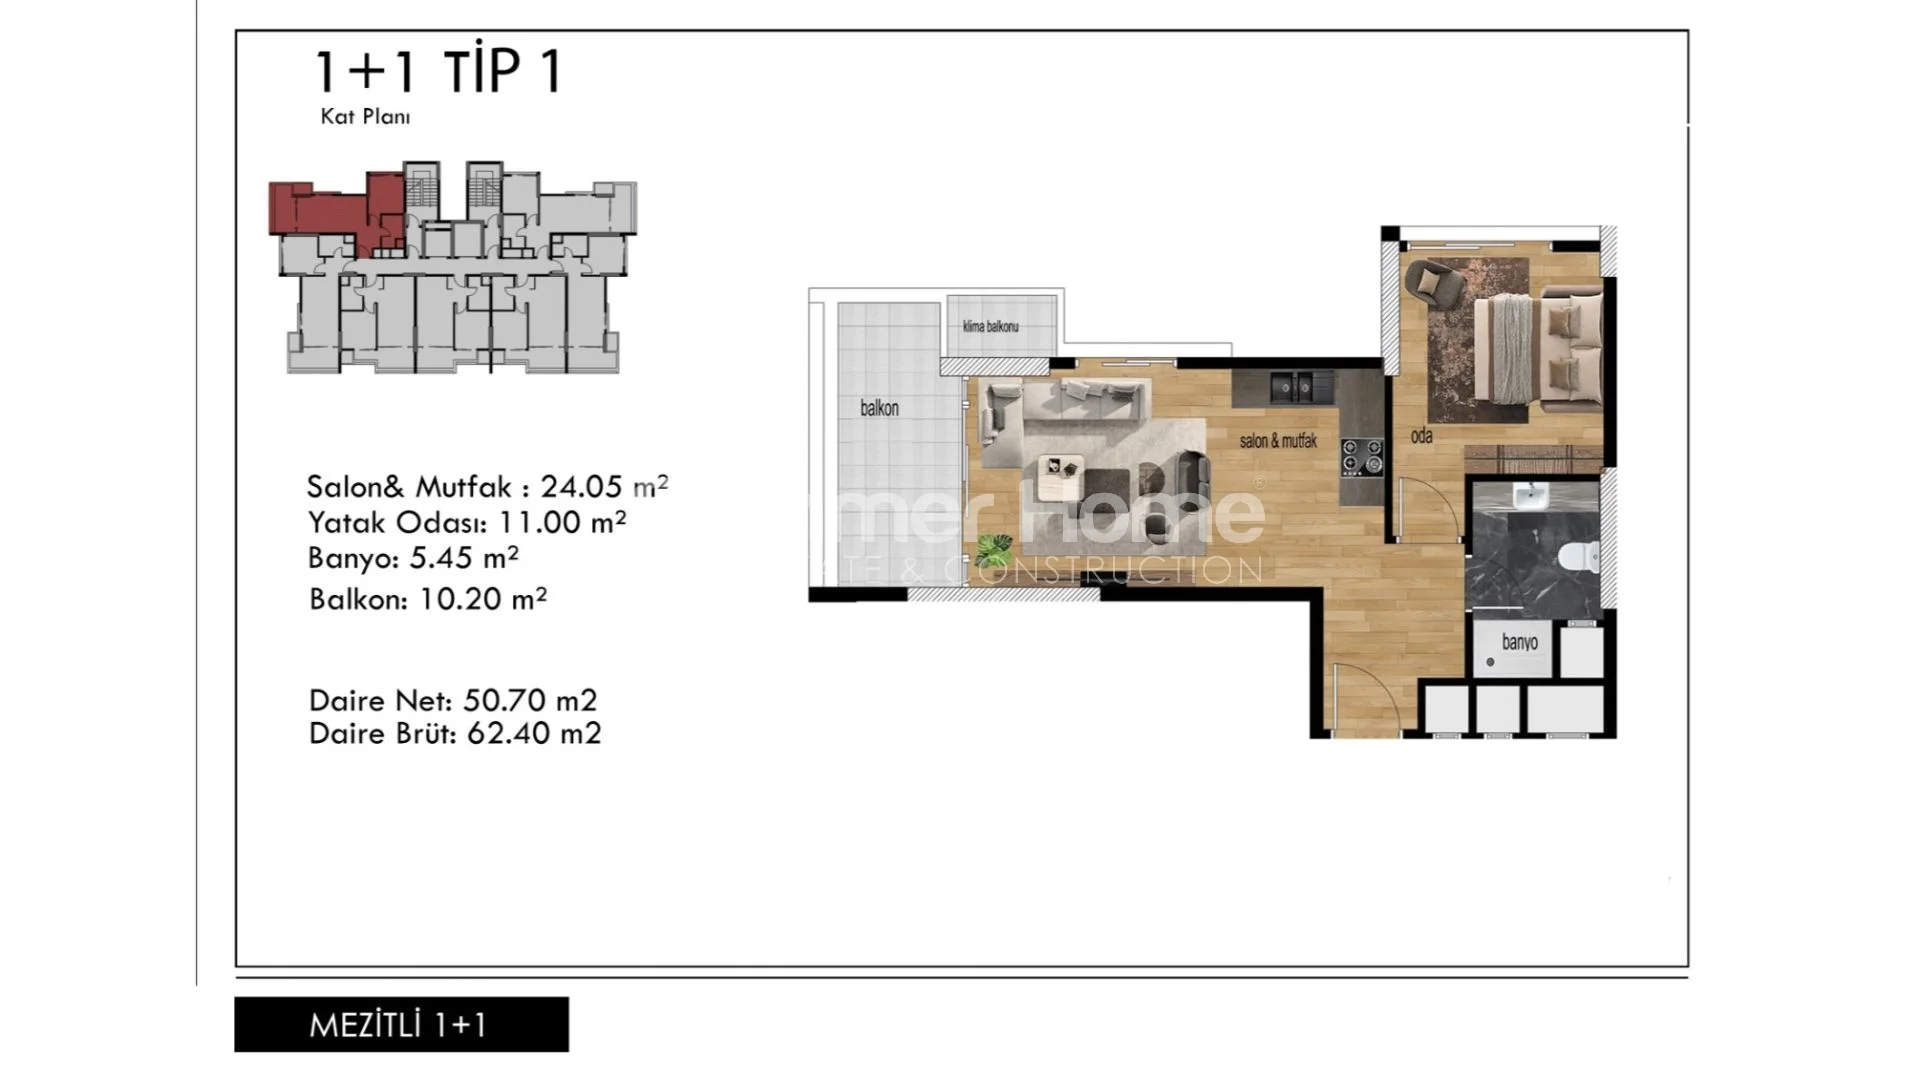 Prekrasni apartmani modernog dizajna u Mezitli, Mersin plan - 21